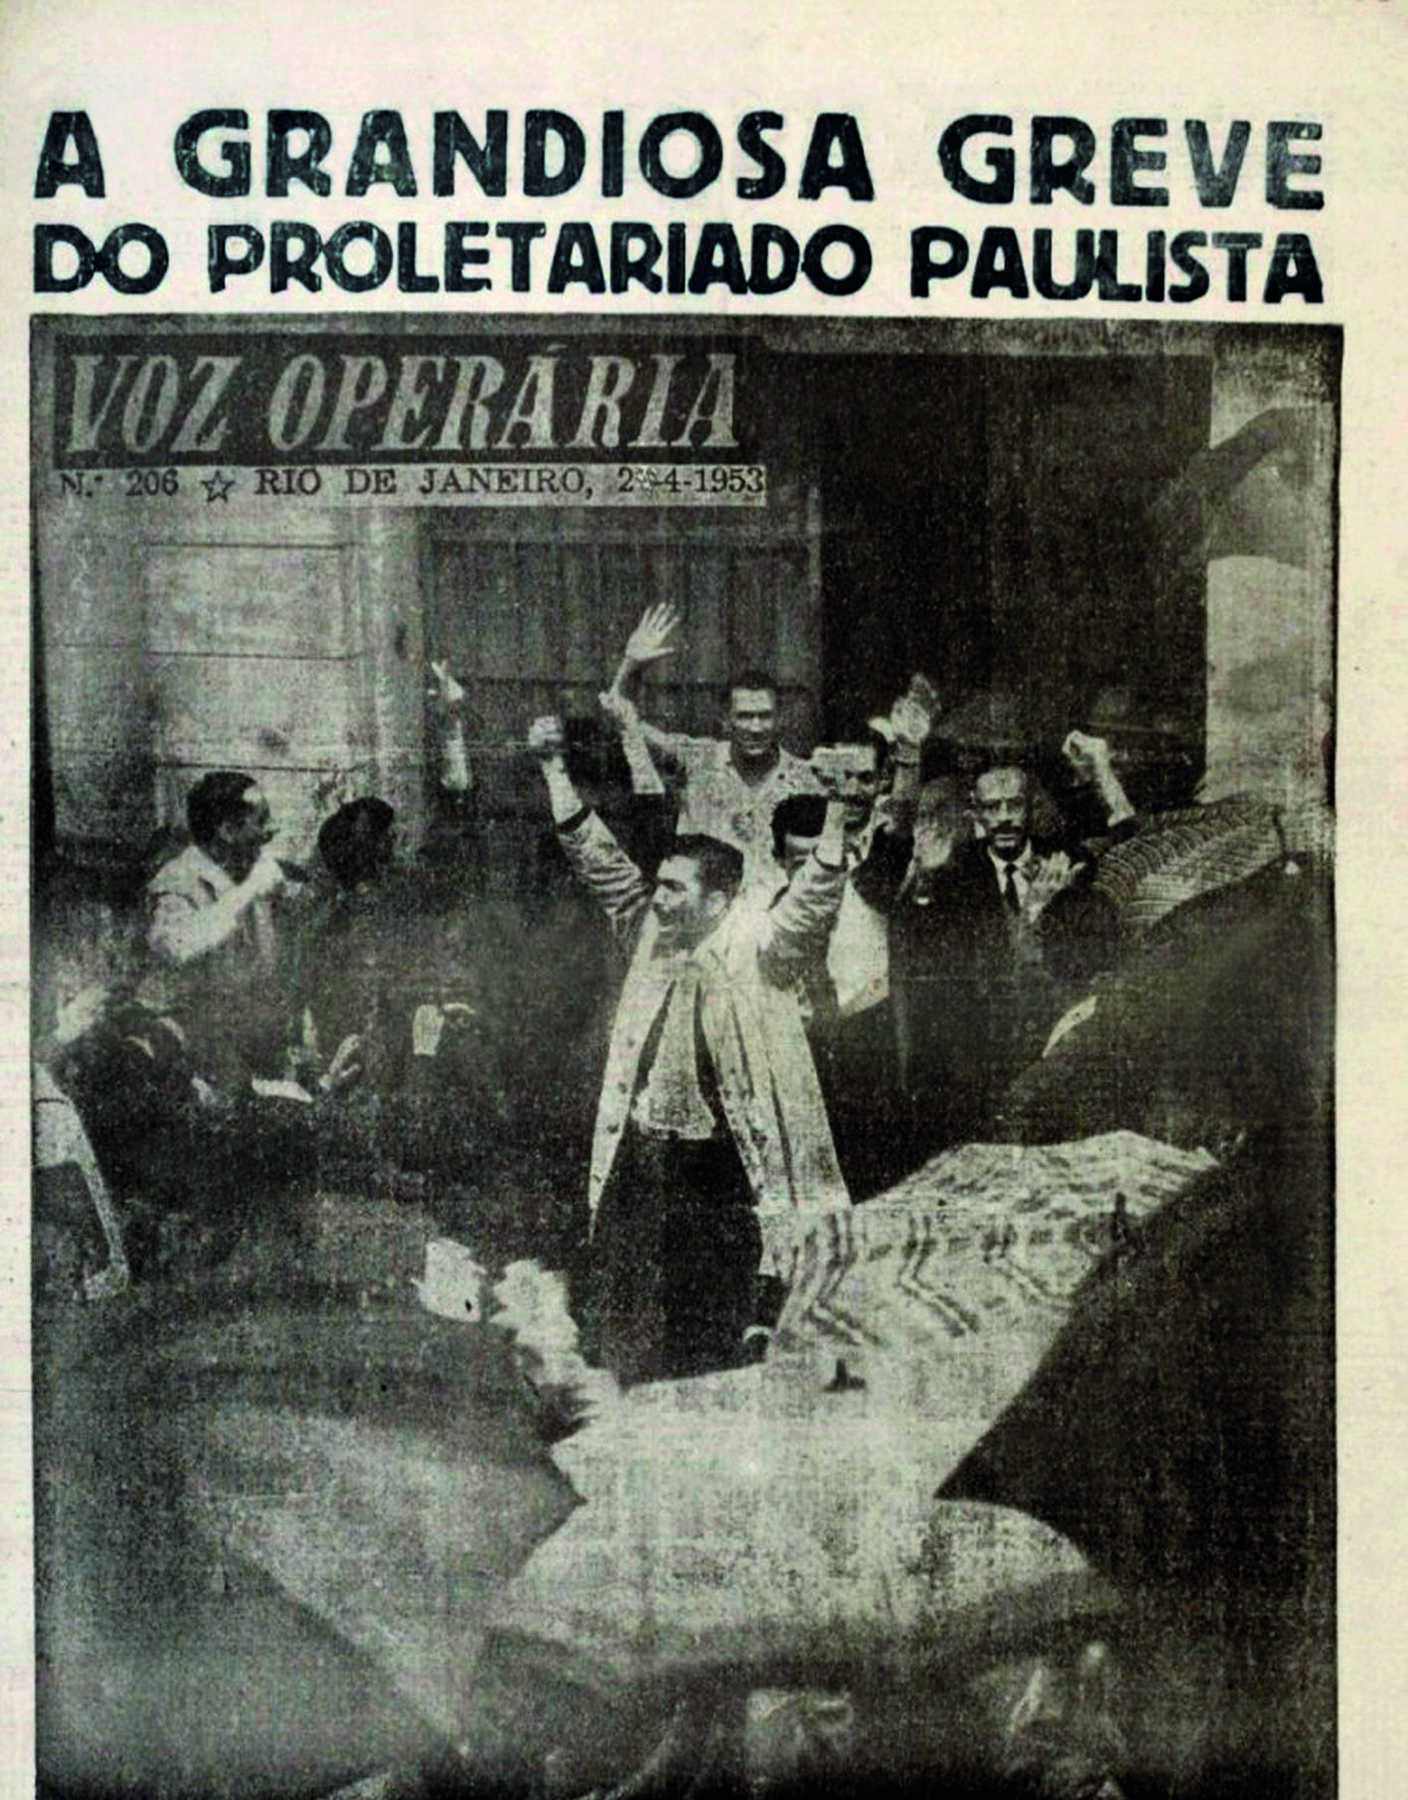 Fotografia em preto e branco. Capa de um jornal com a manchete: 'A grandiosa greve do proletariado paulista'. Ao centro, um grupo de homens aglomerados, com os braços e mãos ao alto.